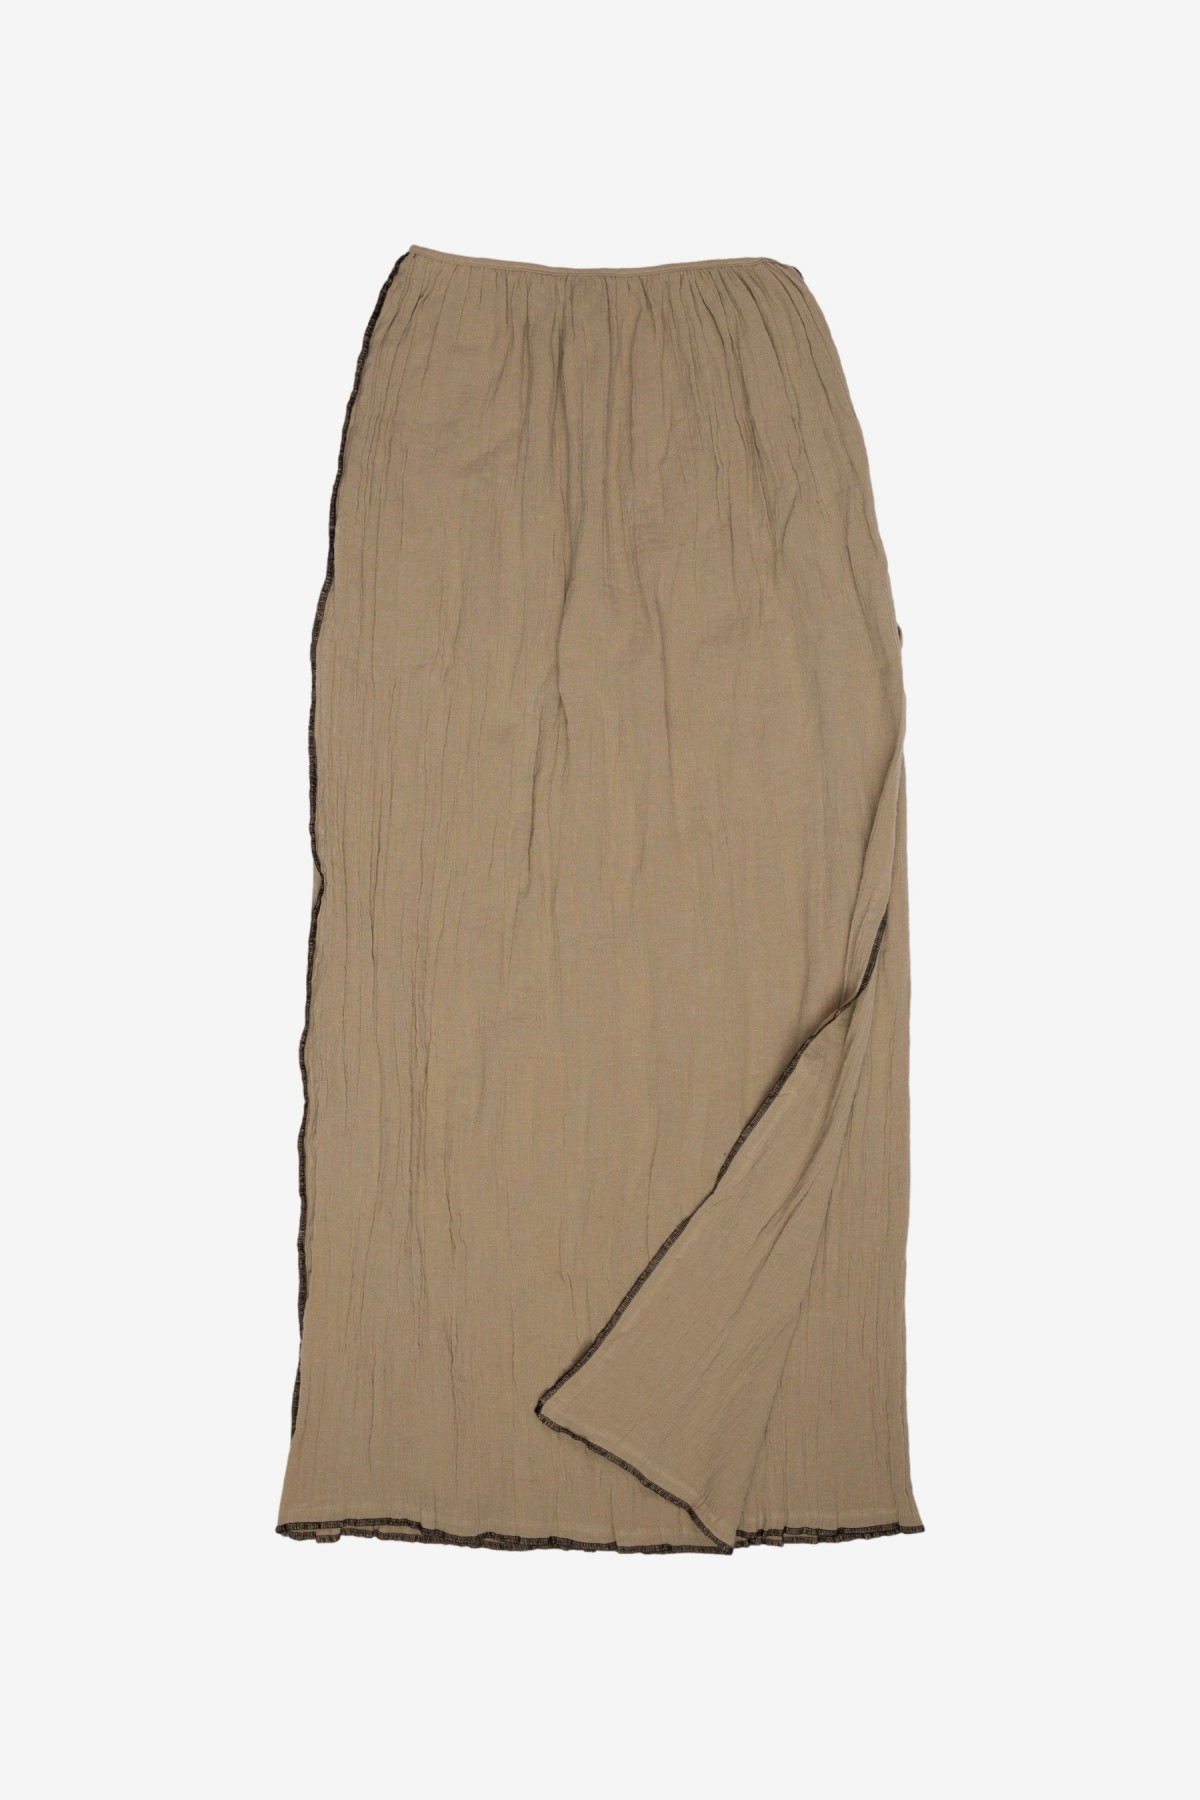 Baserange Shok Wrap Skirt in Acacia Brown